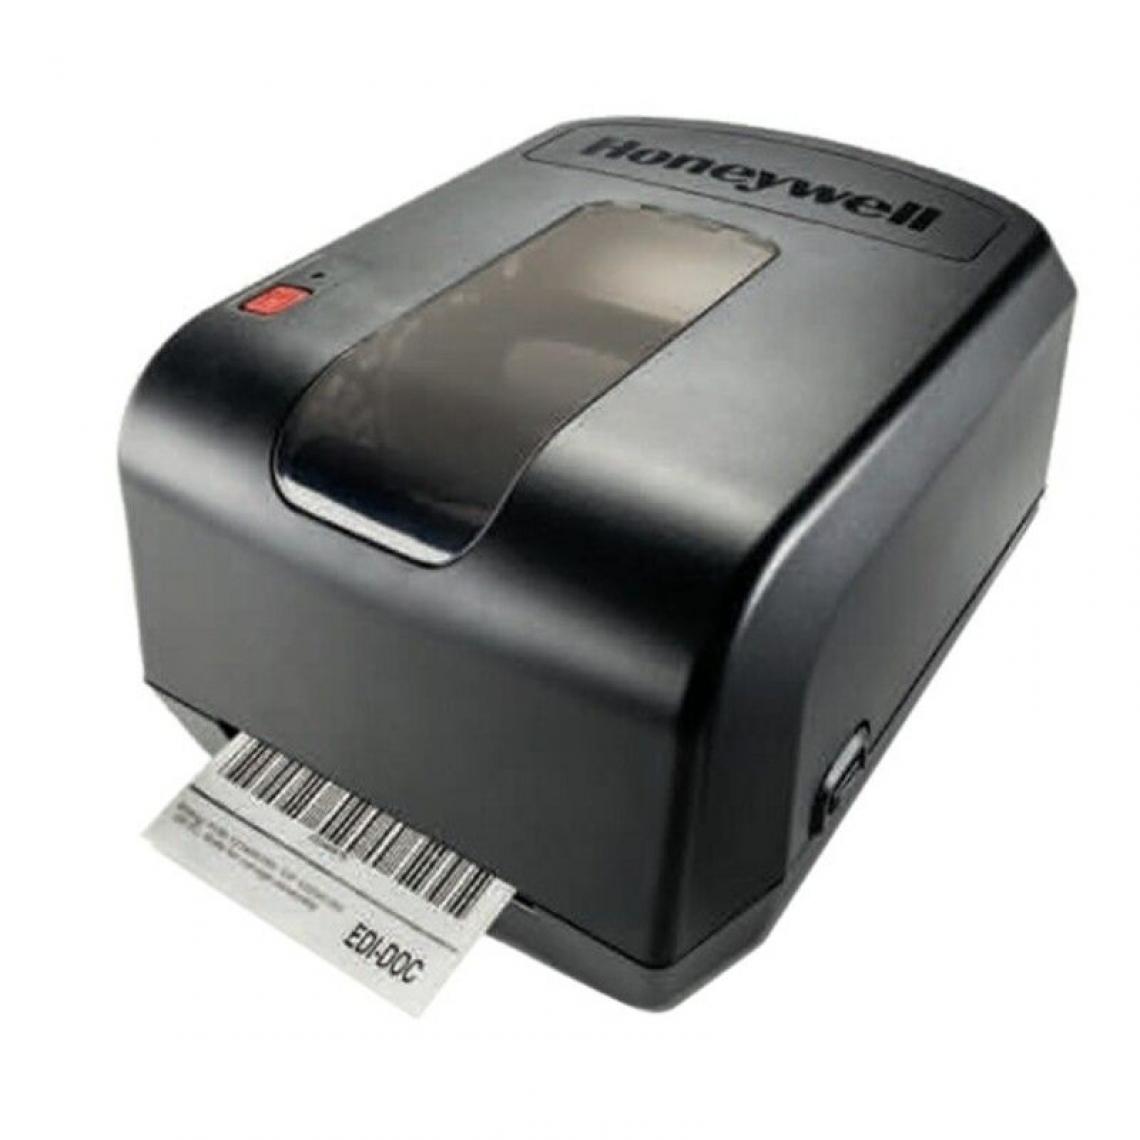 Inconnu - Imprimante Thermique Honeywell PC42II 100 mm/s USB Noir - Imprimantes d'étiquettes